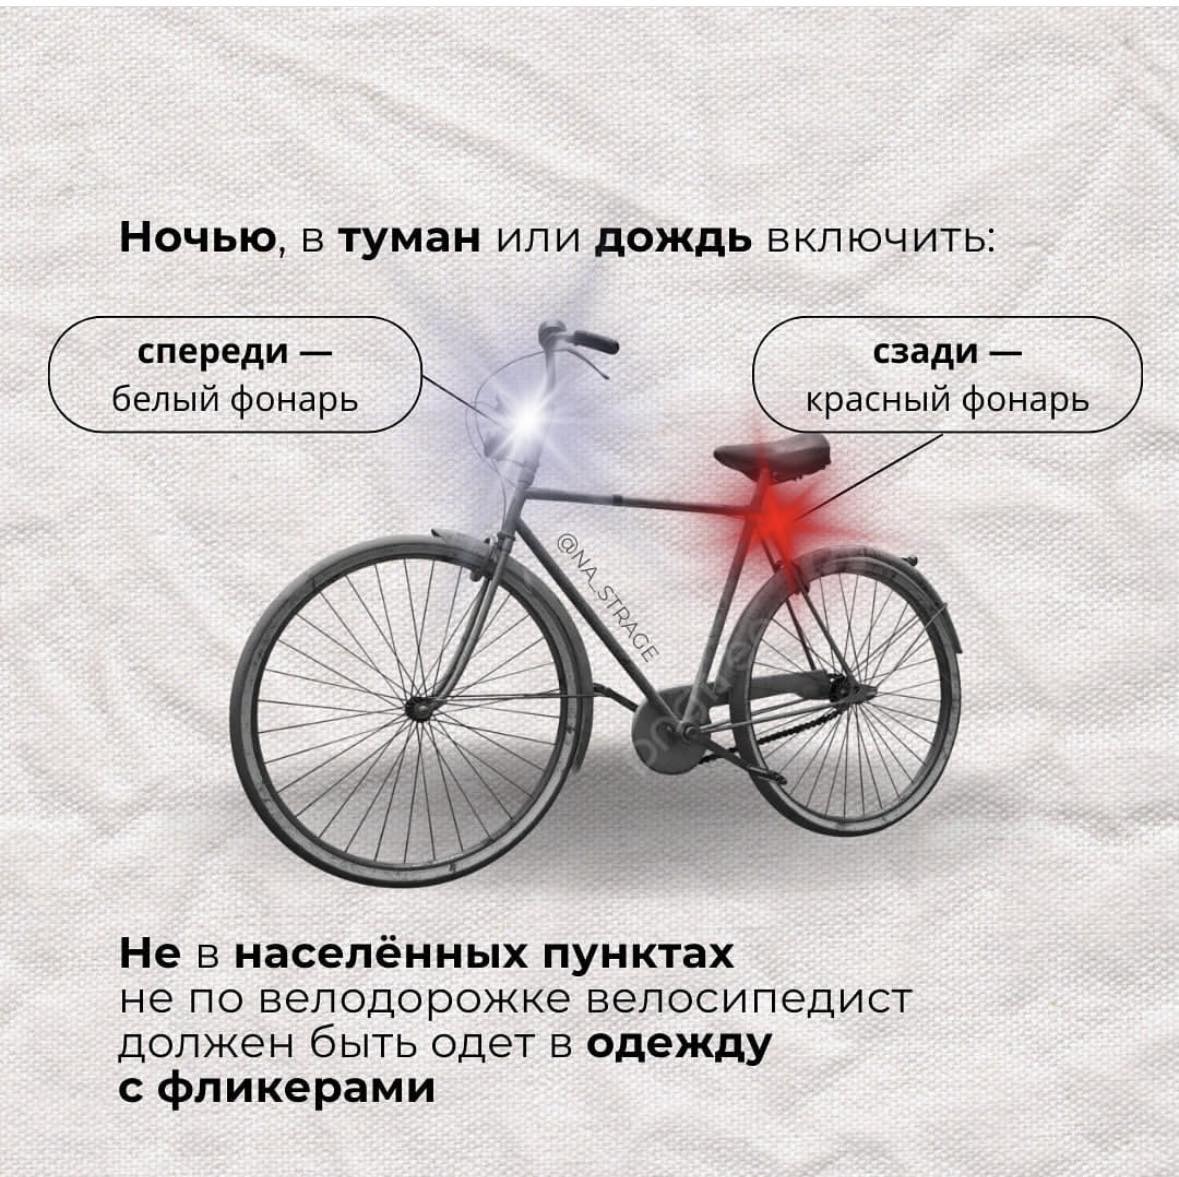 Правила езды на велосипеде!